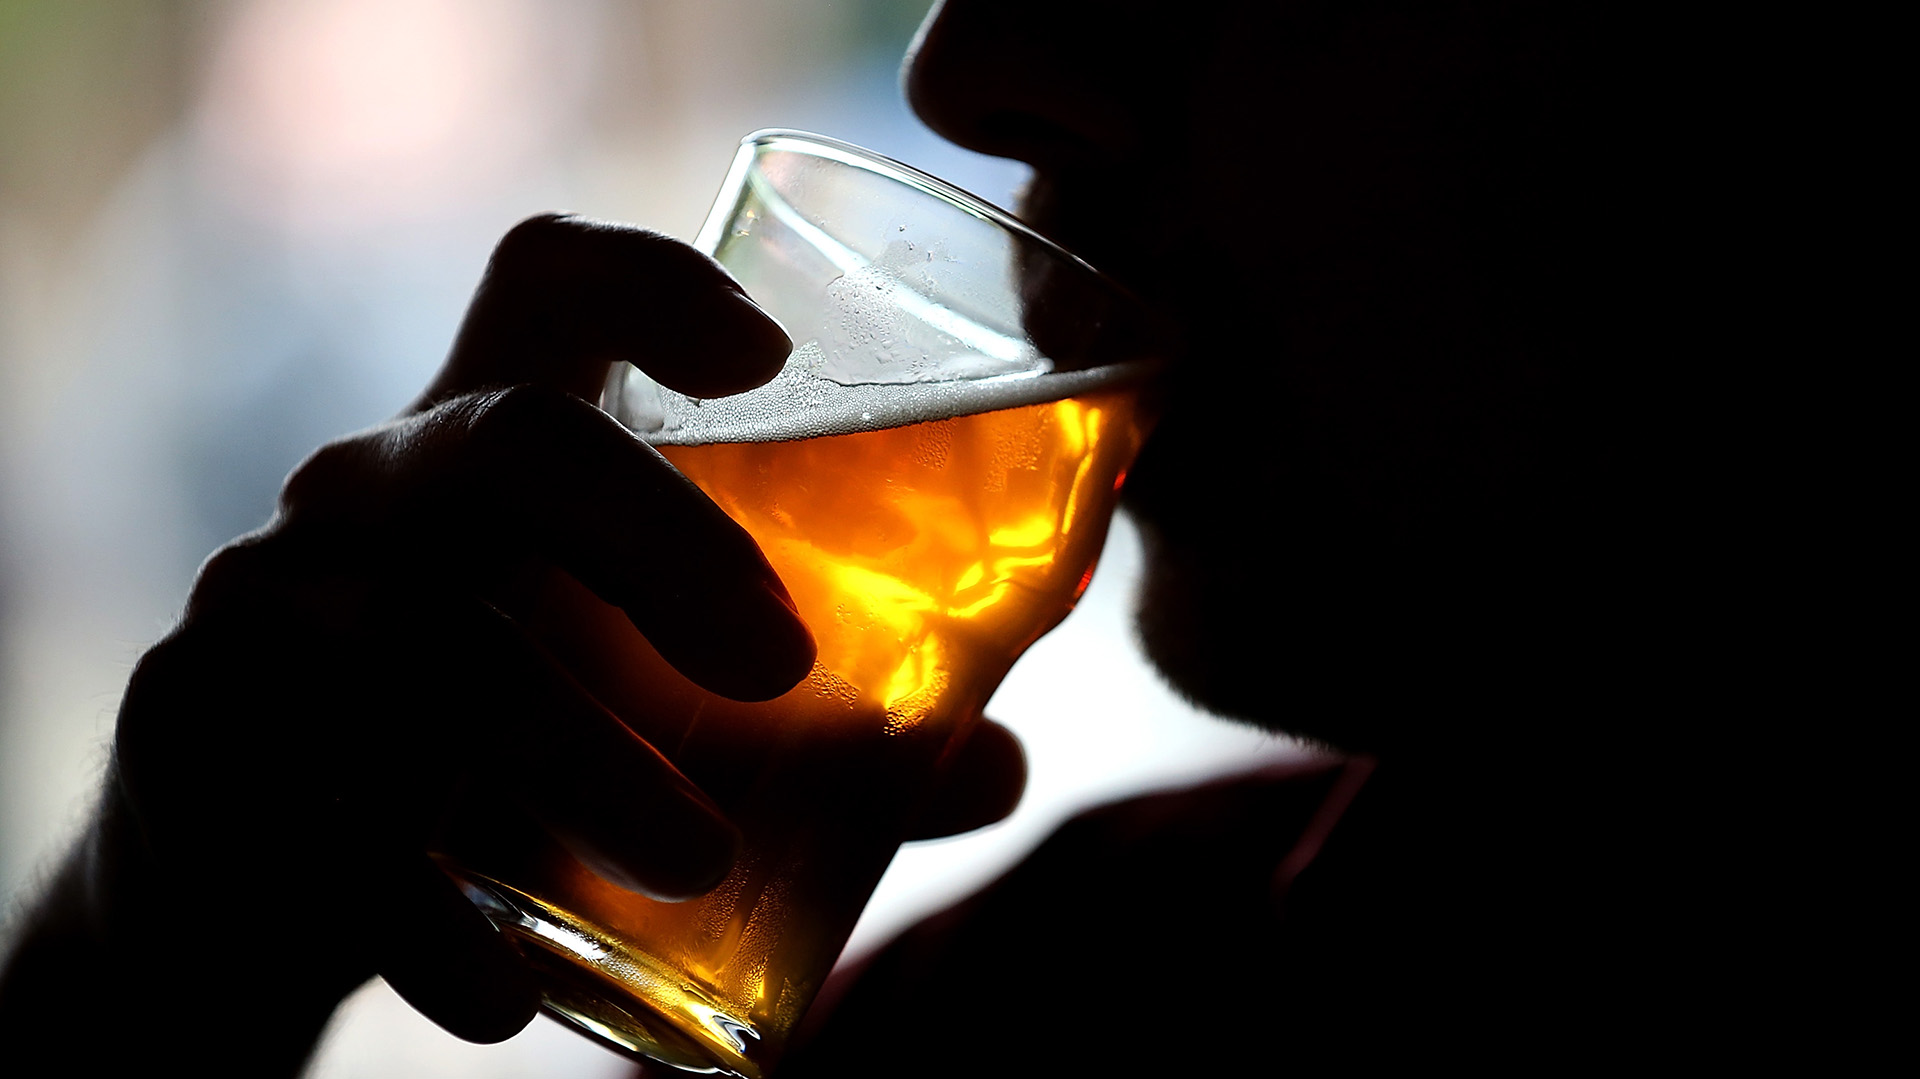 Investigadores identificaron que se conseguiría una mayor reducción de la carga de cáncer atribuible al alcohol si el grupo de los bebedores moderados pasaran a la categoría de “consumo leve o ligero”
(Photo by Justin Sullivan/Getty Images)